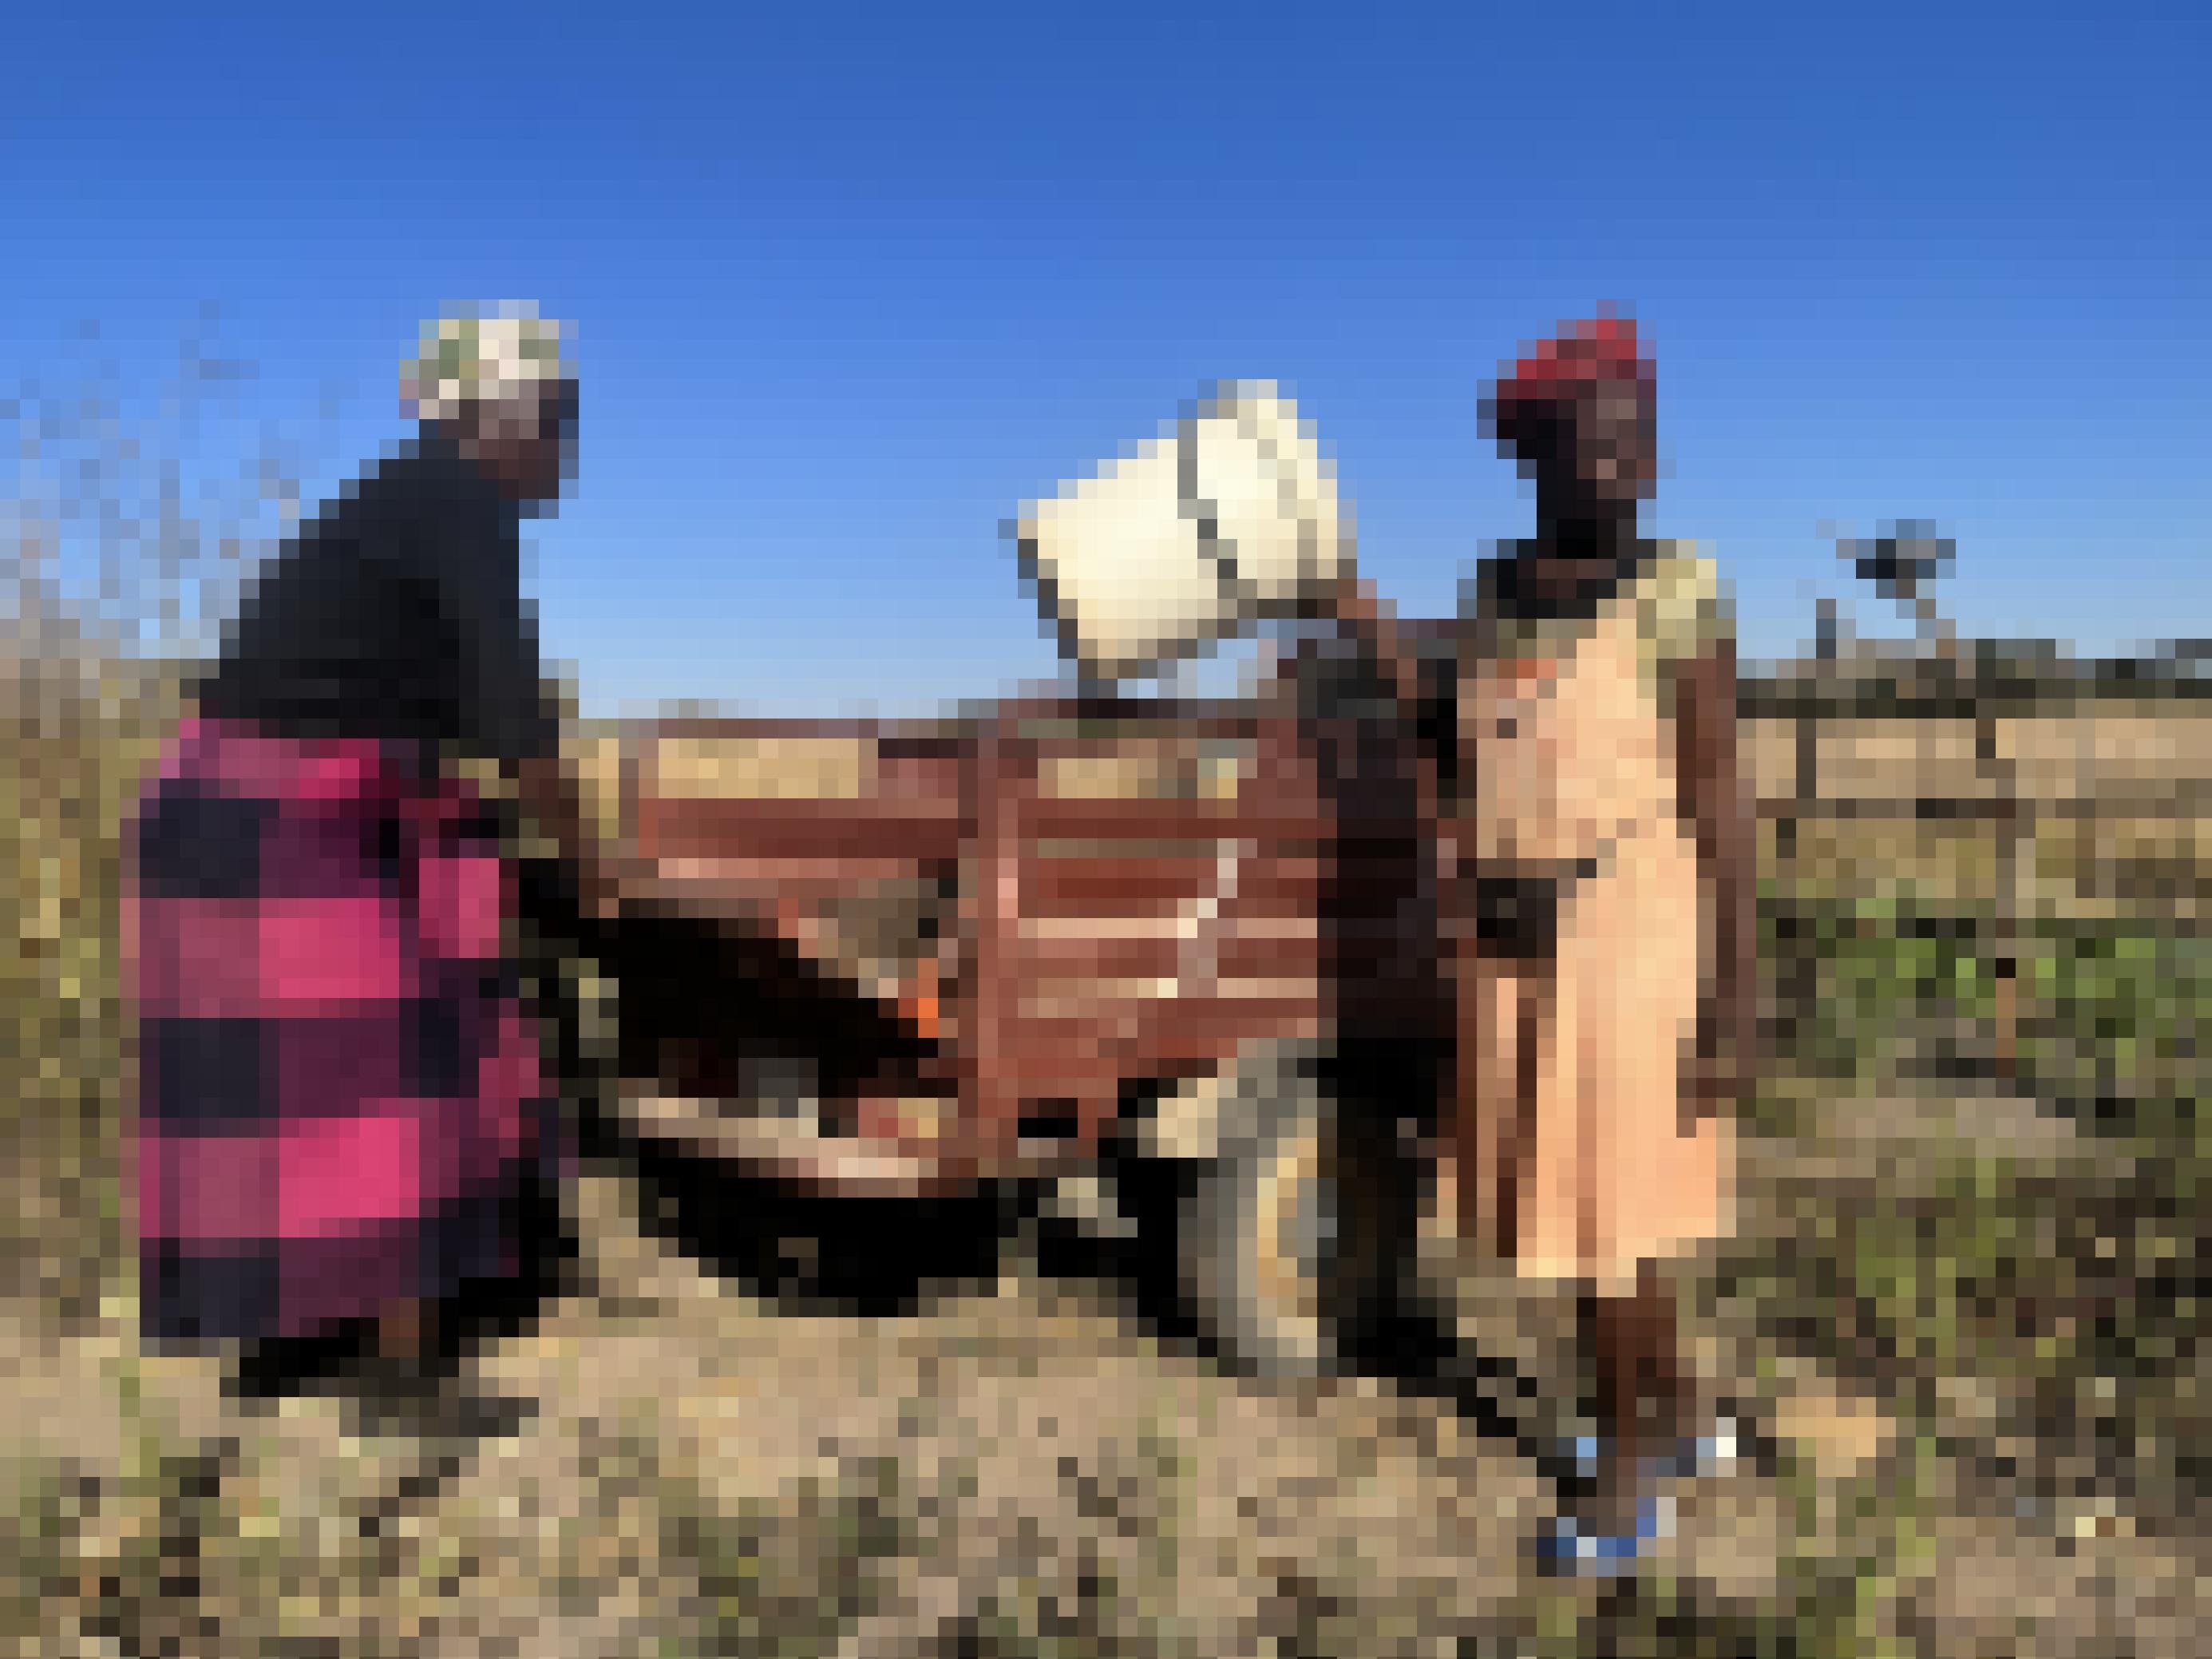 Mtambo klappt die Transportfläche herunter, ihre Nachbarin greift einen Eimer